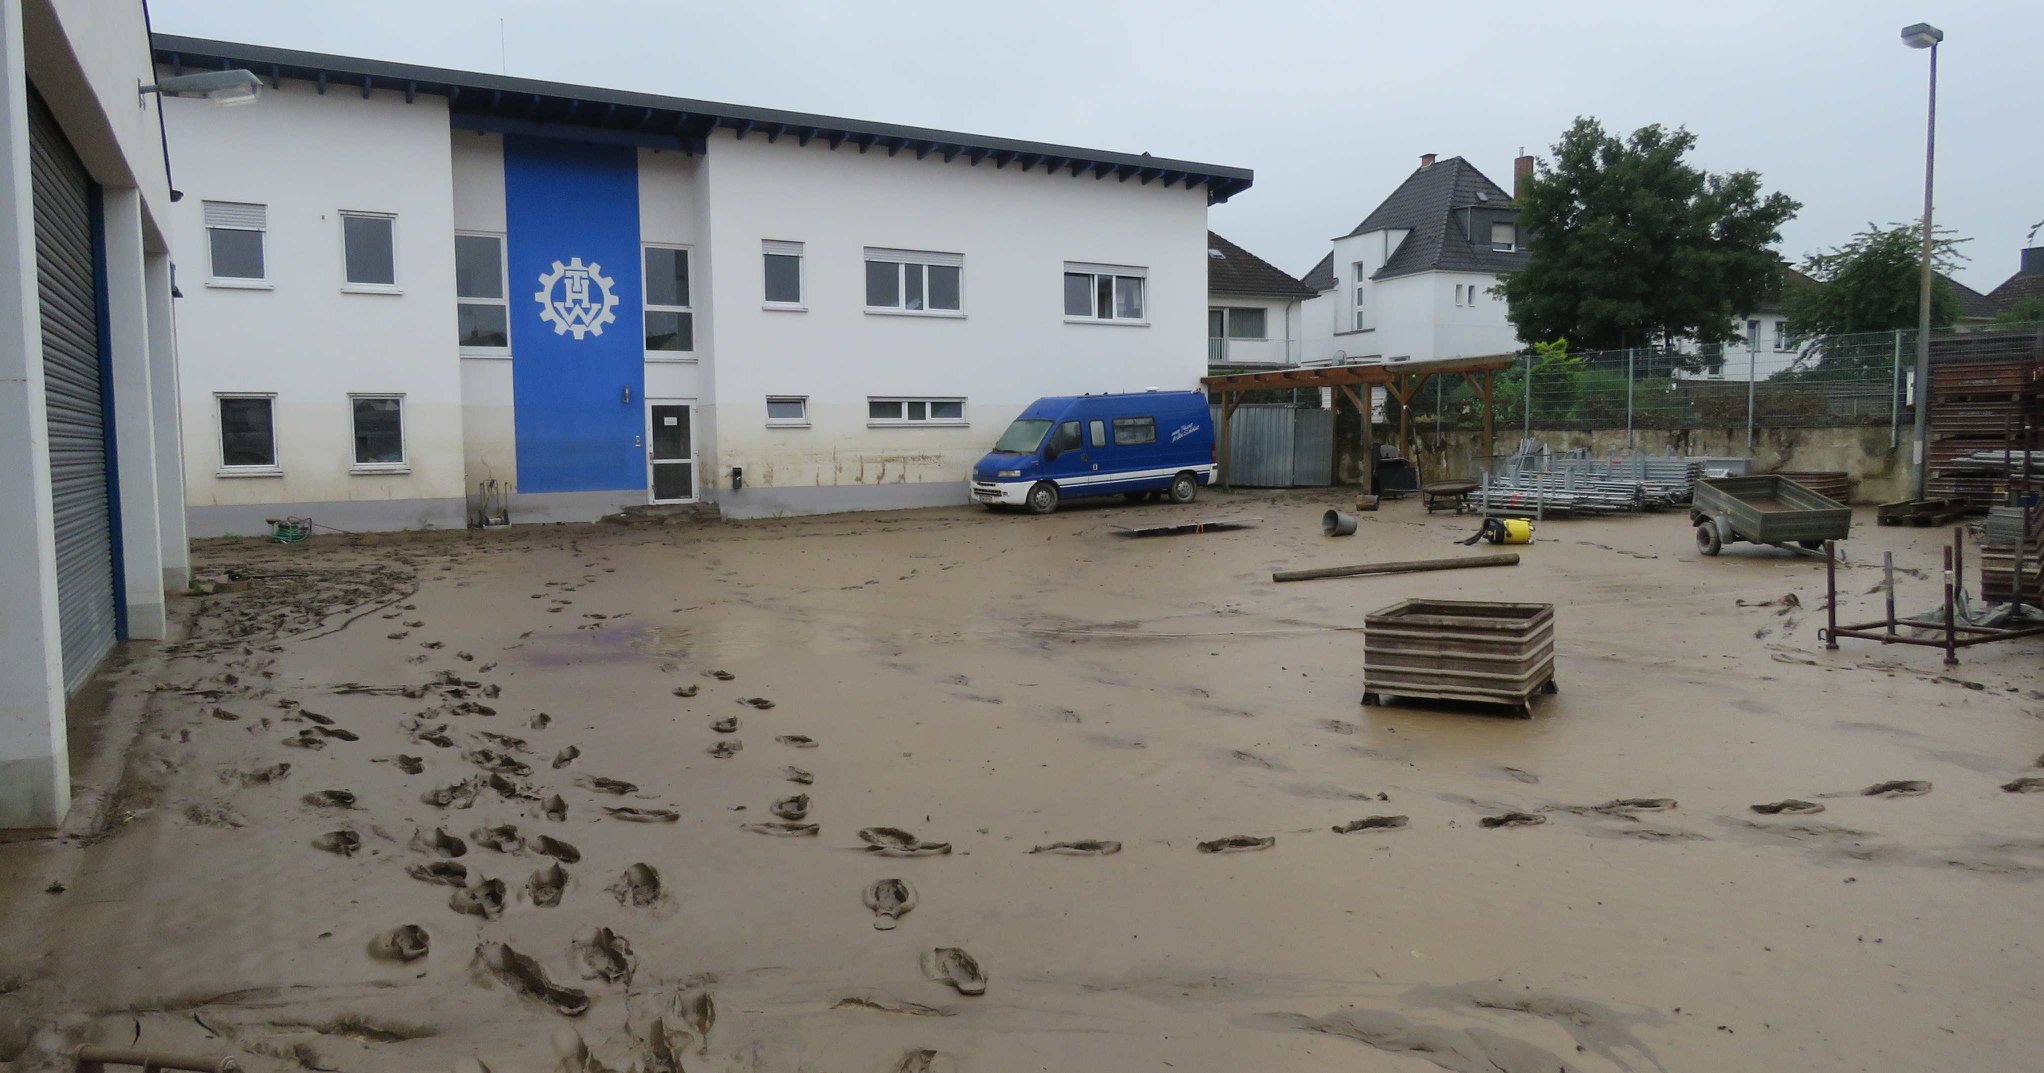 THW-Ahrweiler hilft trotz eigener Überflutung